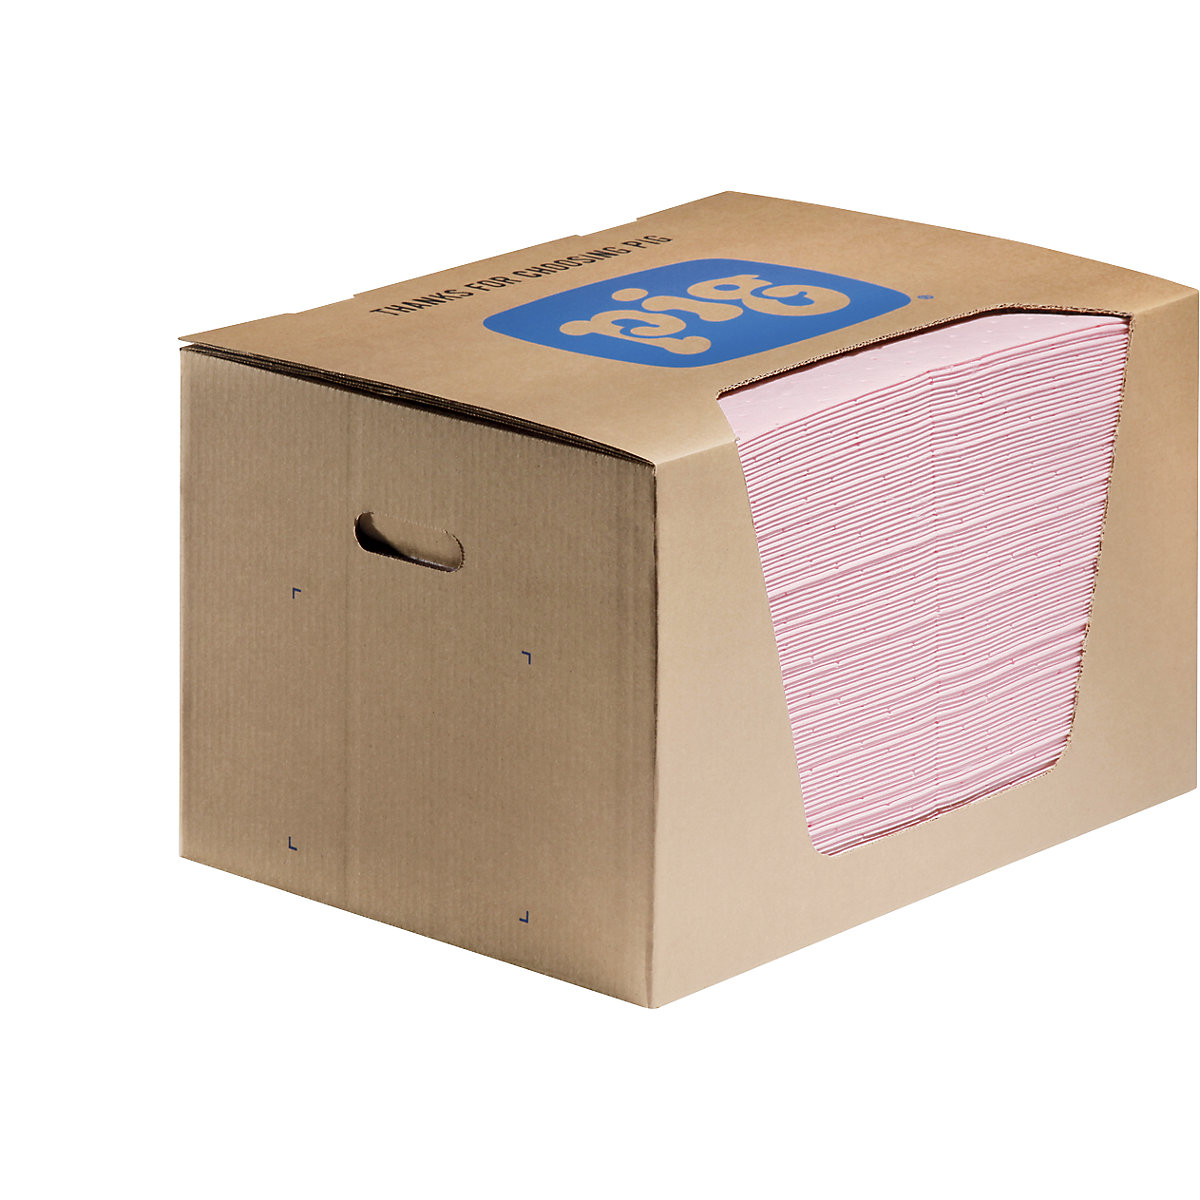 HazMat absorbent sheeting mat – PIG